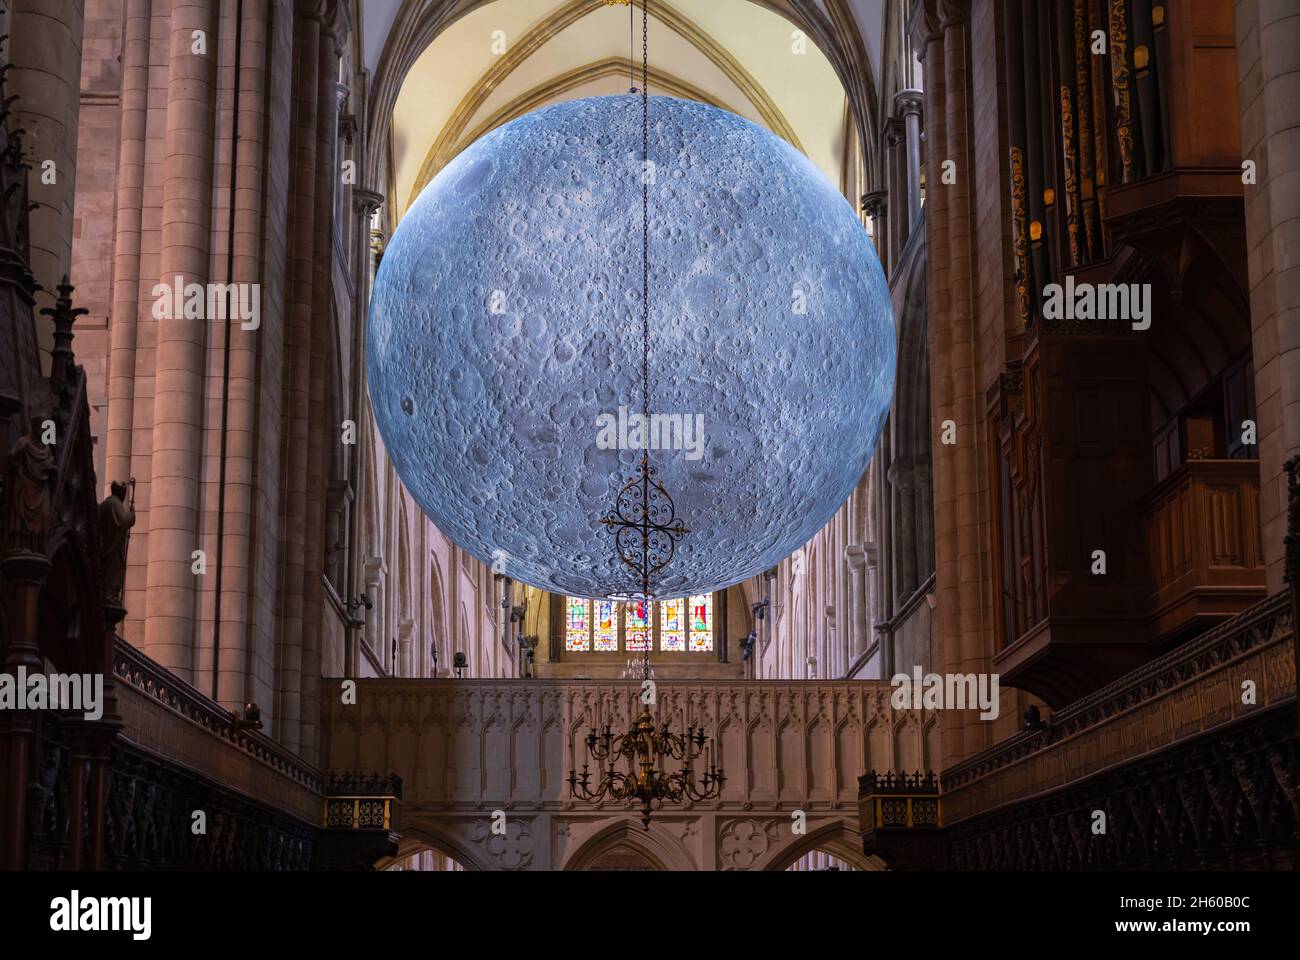 Museum of the Moon Touren durch die Chichester Cathedral in der Stadt Chichester, Großbritannien. Mit Dank an den Dekan und das Kapitel der Chichester Kathedrale. Stockfoto